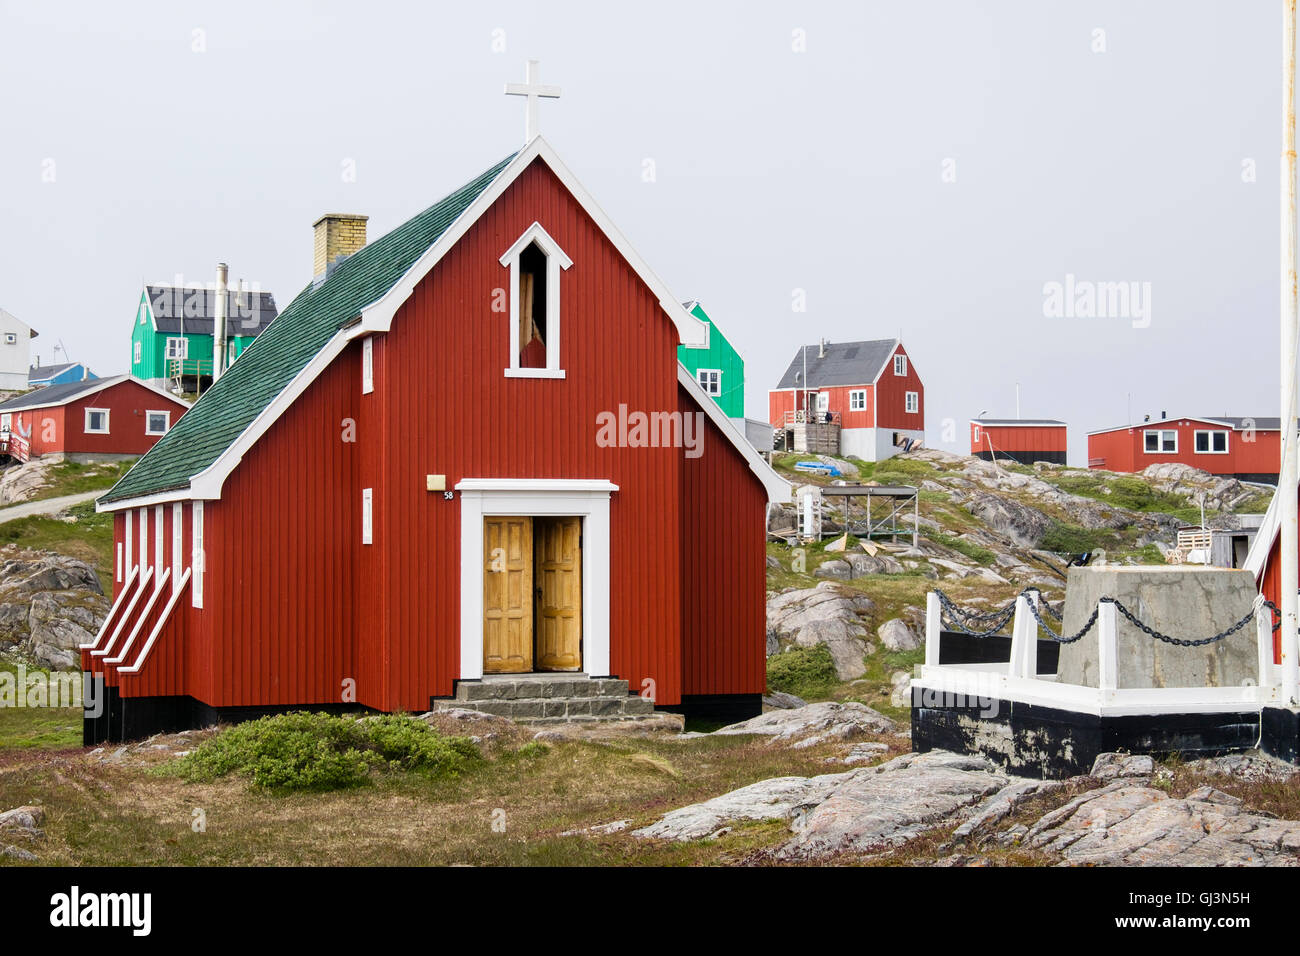 Traditionelle bunte Holzhäuser und kleine Inuit Kirche. Itilleq, Qeqqata, Grönland. Stockfoto